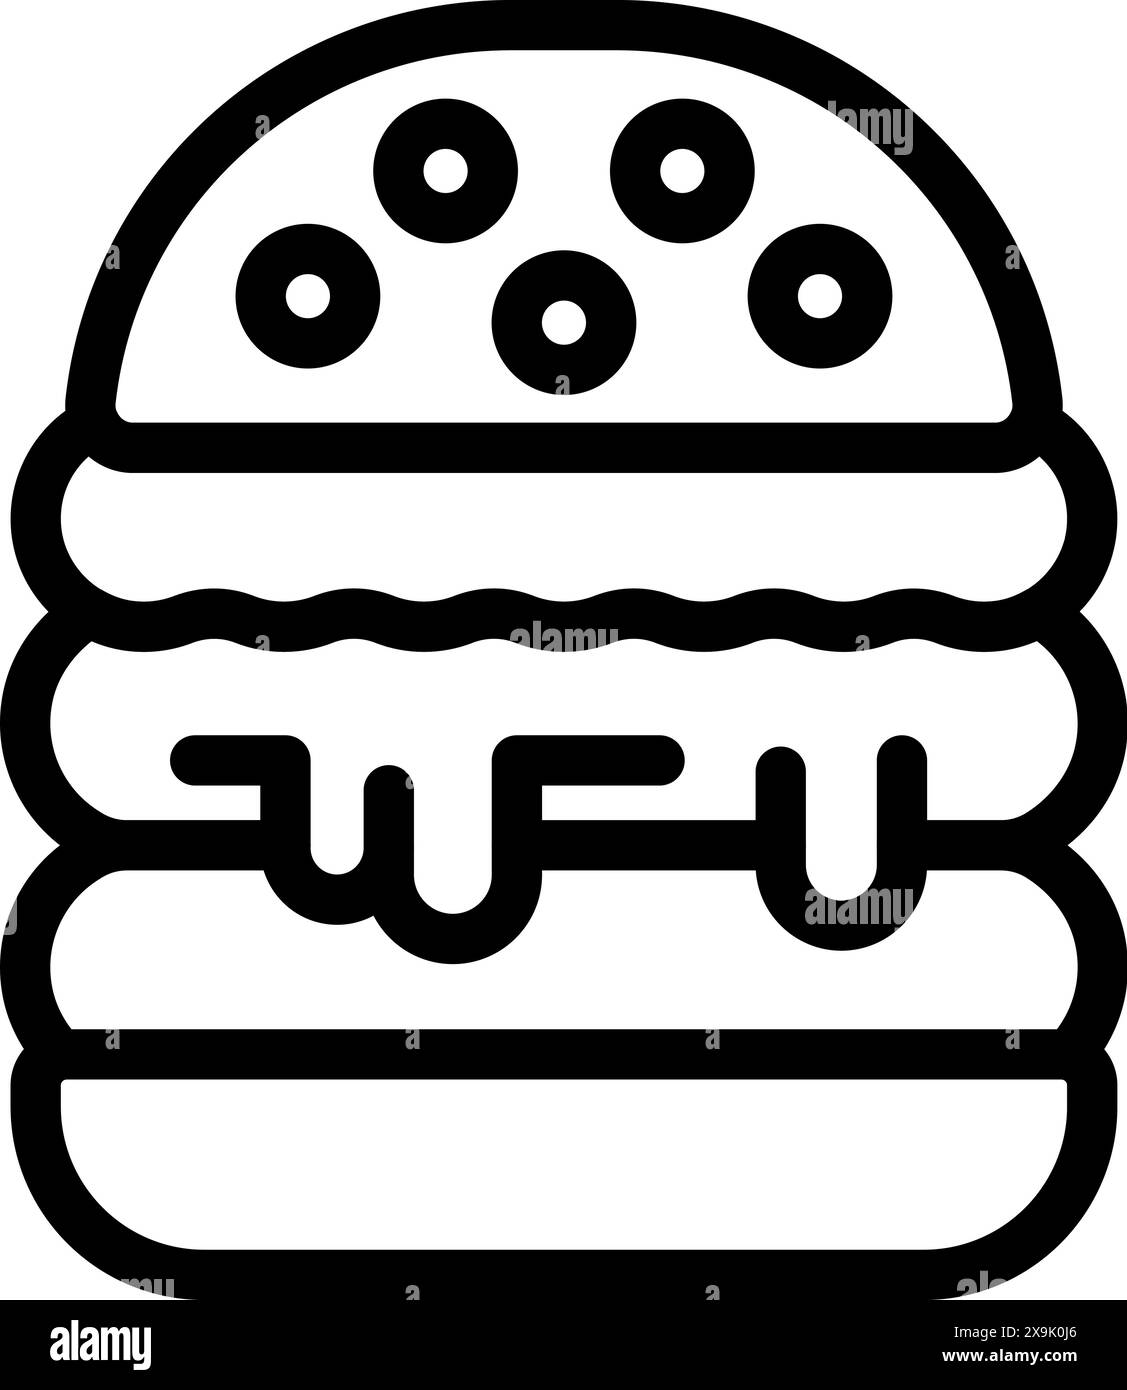 Semplice disegno lineare di un hamburger impilato, in bianco e nero, adatto per le icone dei menu Illustrazione Vettoriale